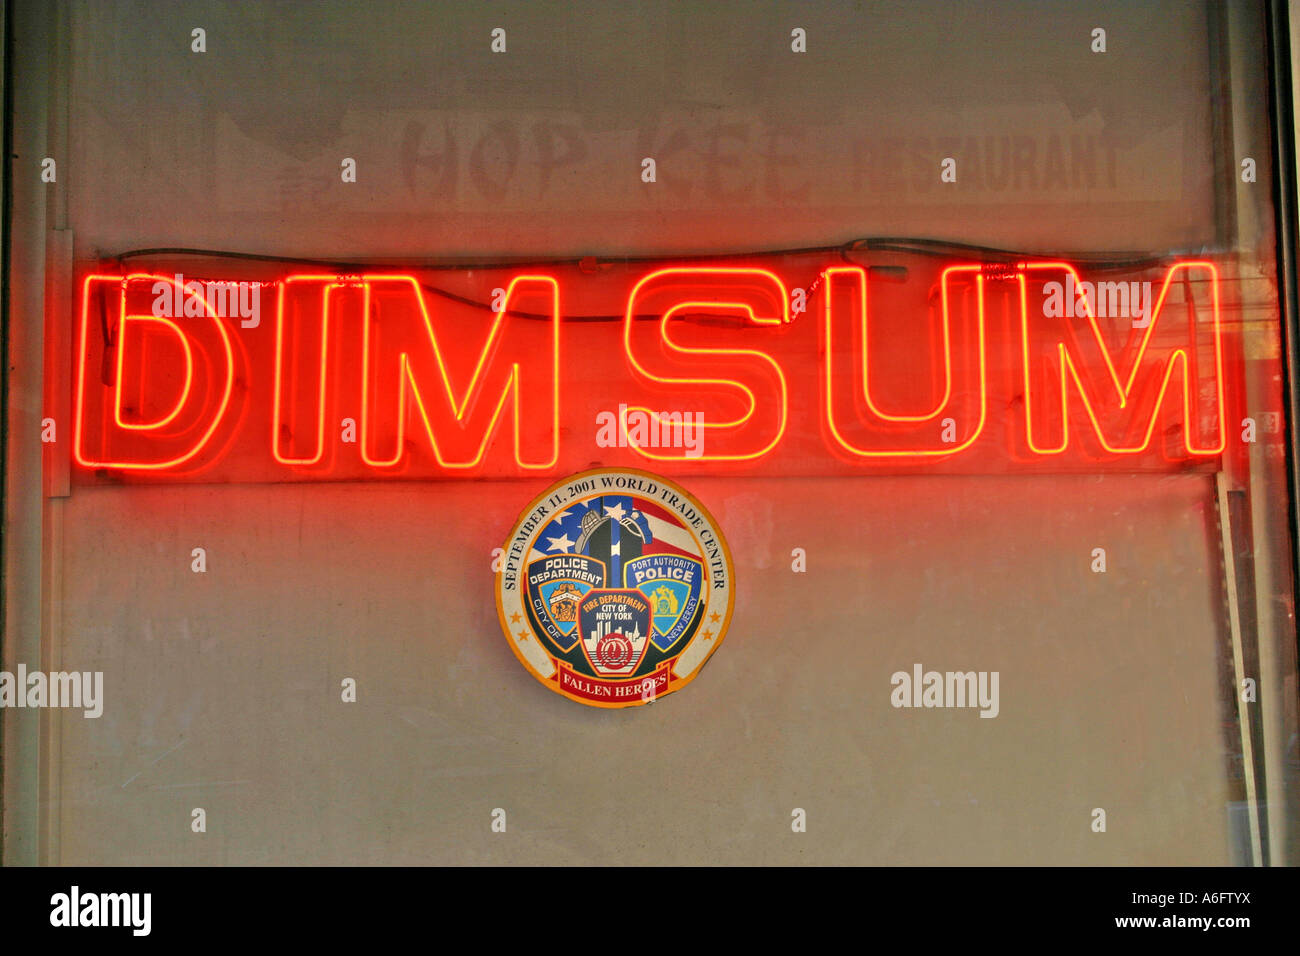 Dim Sum Restaurant Chinatown New York City A6FTYX 